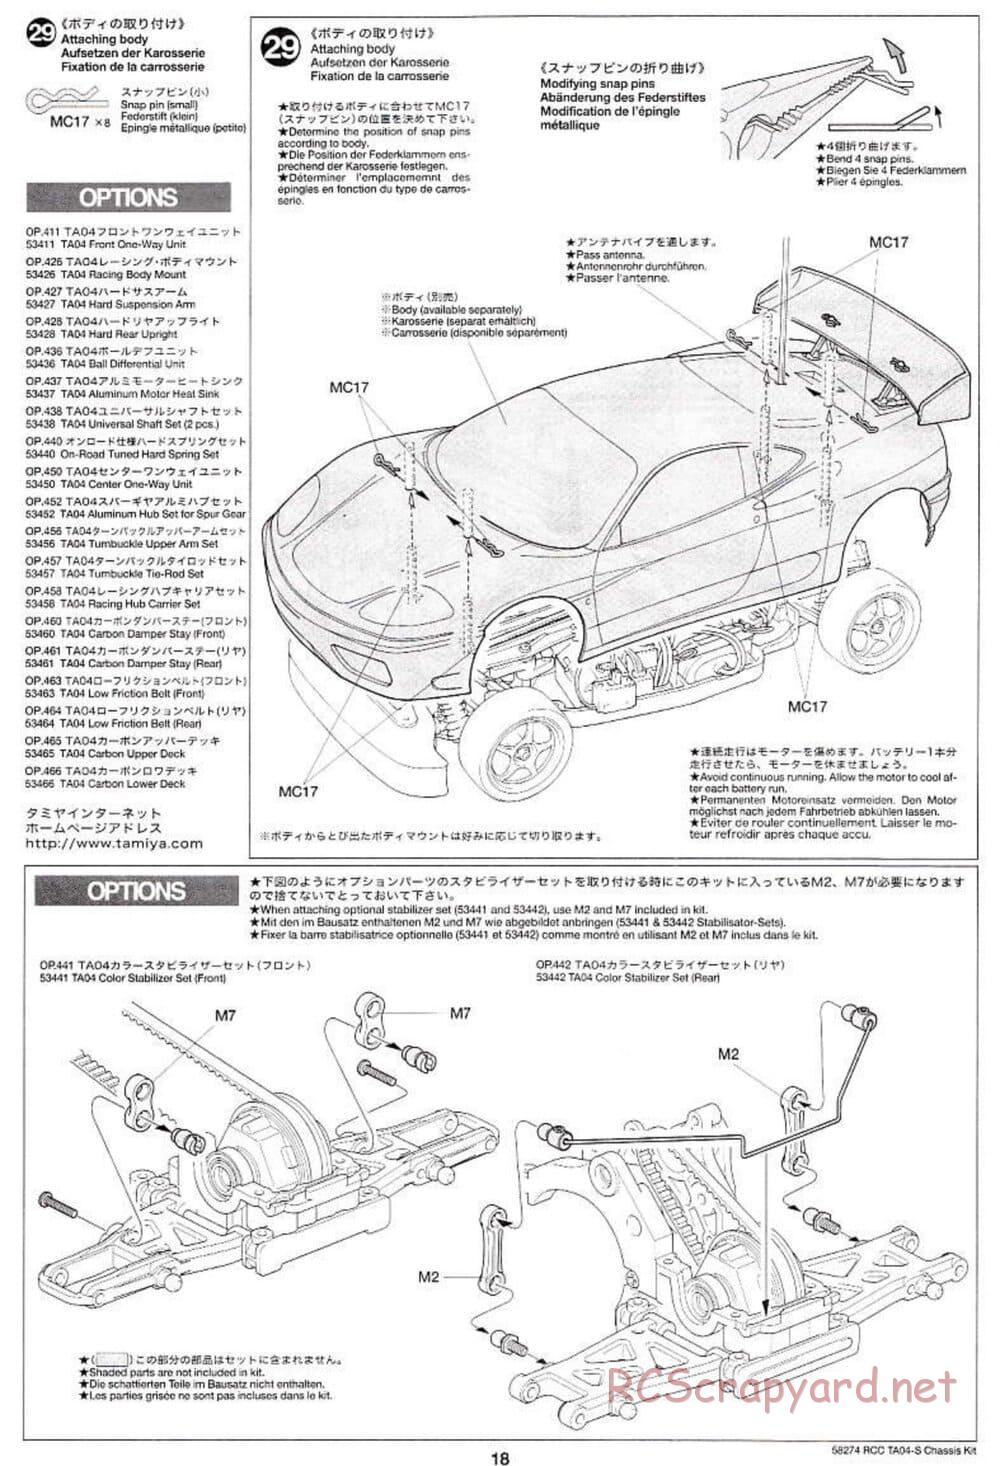 Tamiya - TA-04S Chassis - Manual - Page 18